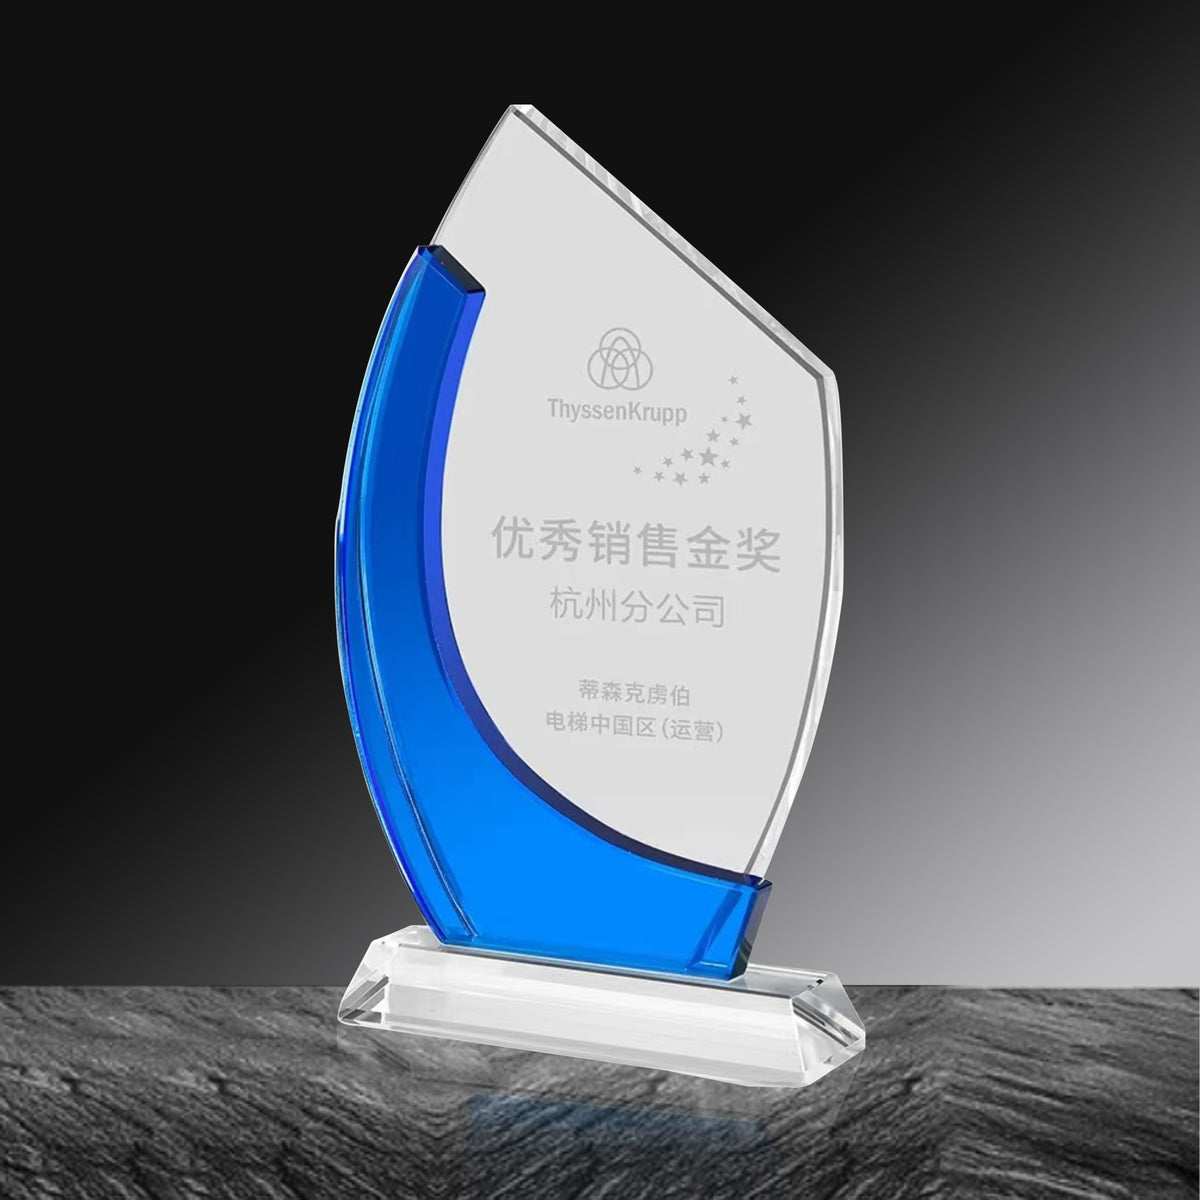 Specail Design Blue Sail Crystal Trophy | 創意企業獎盃紀念品藍帆水晶獎杯定制